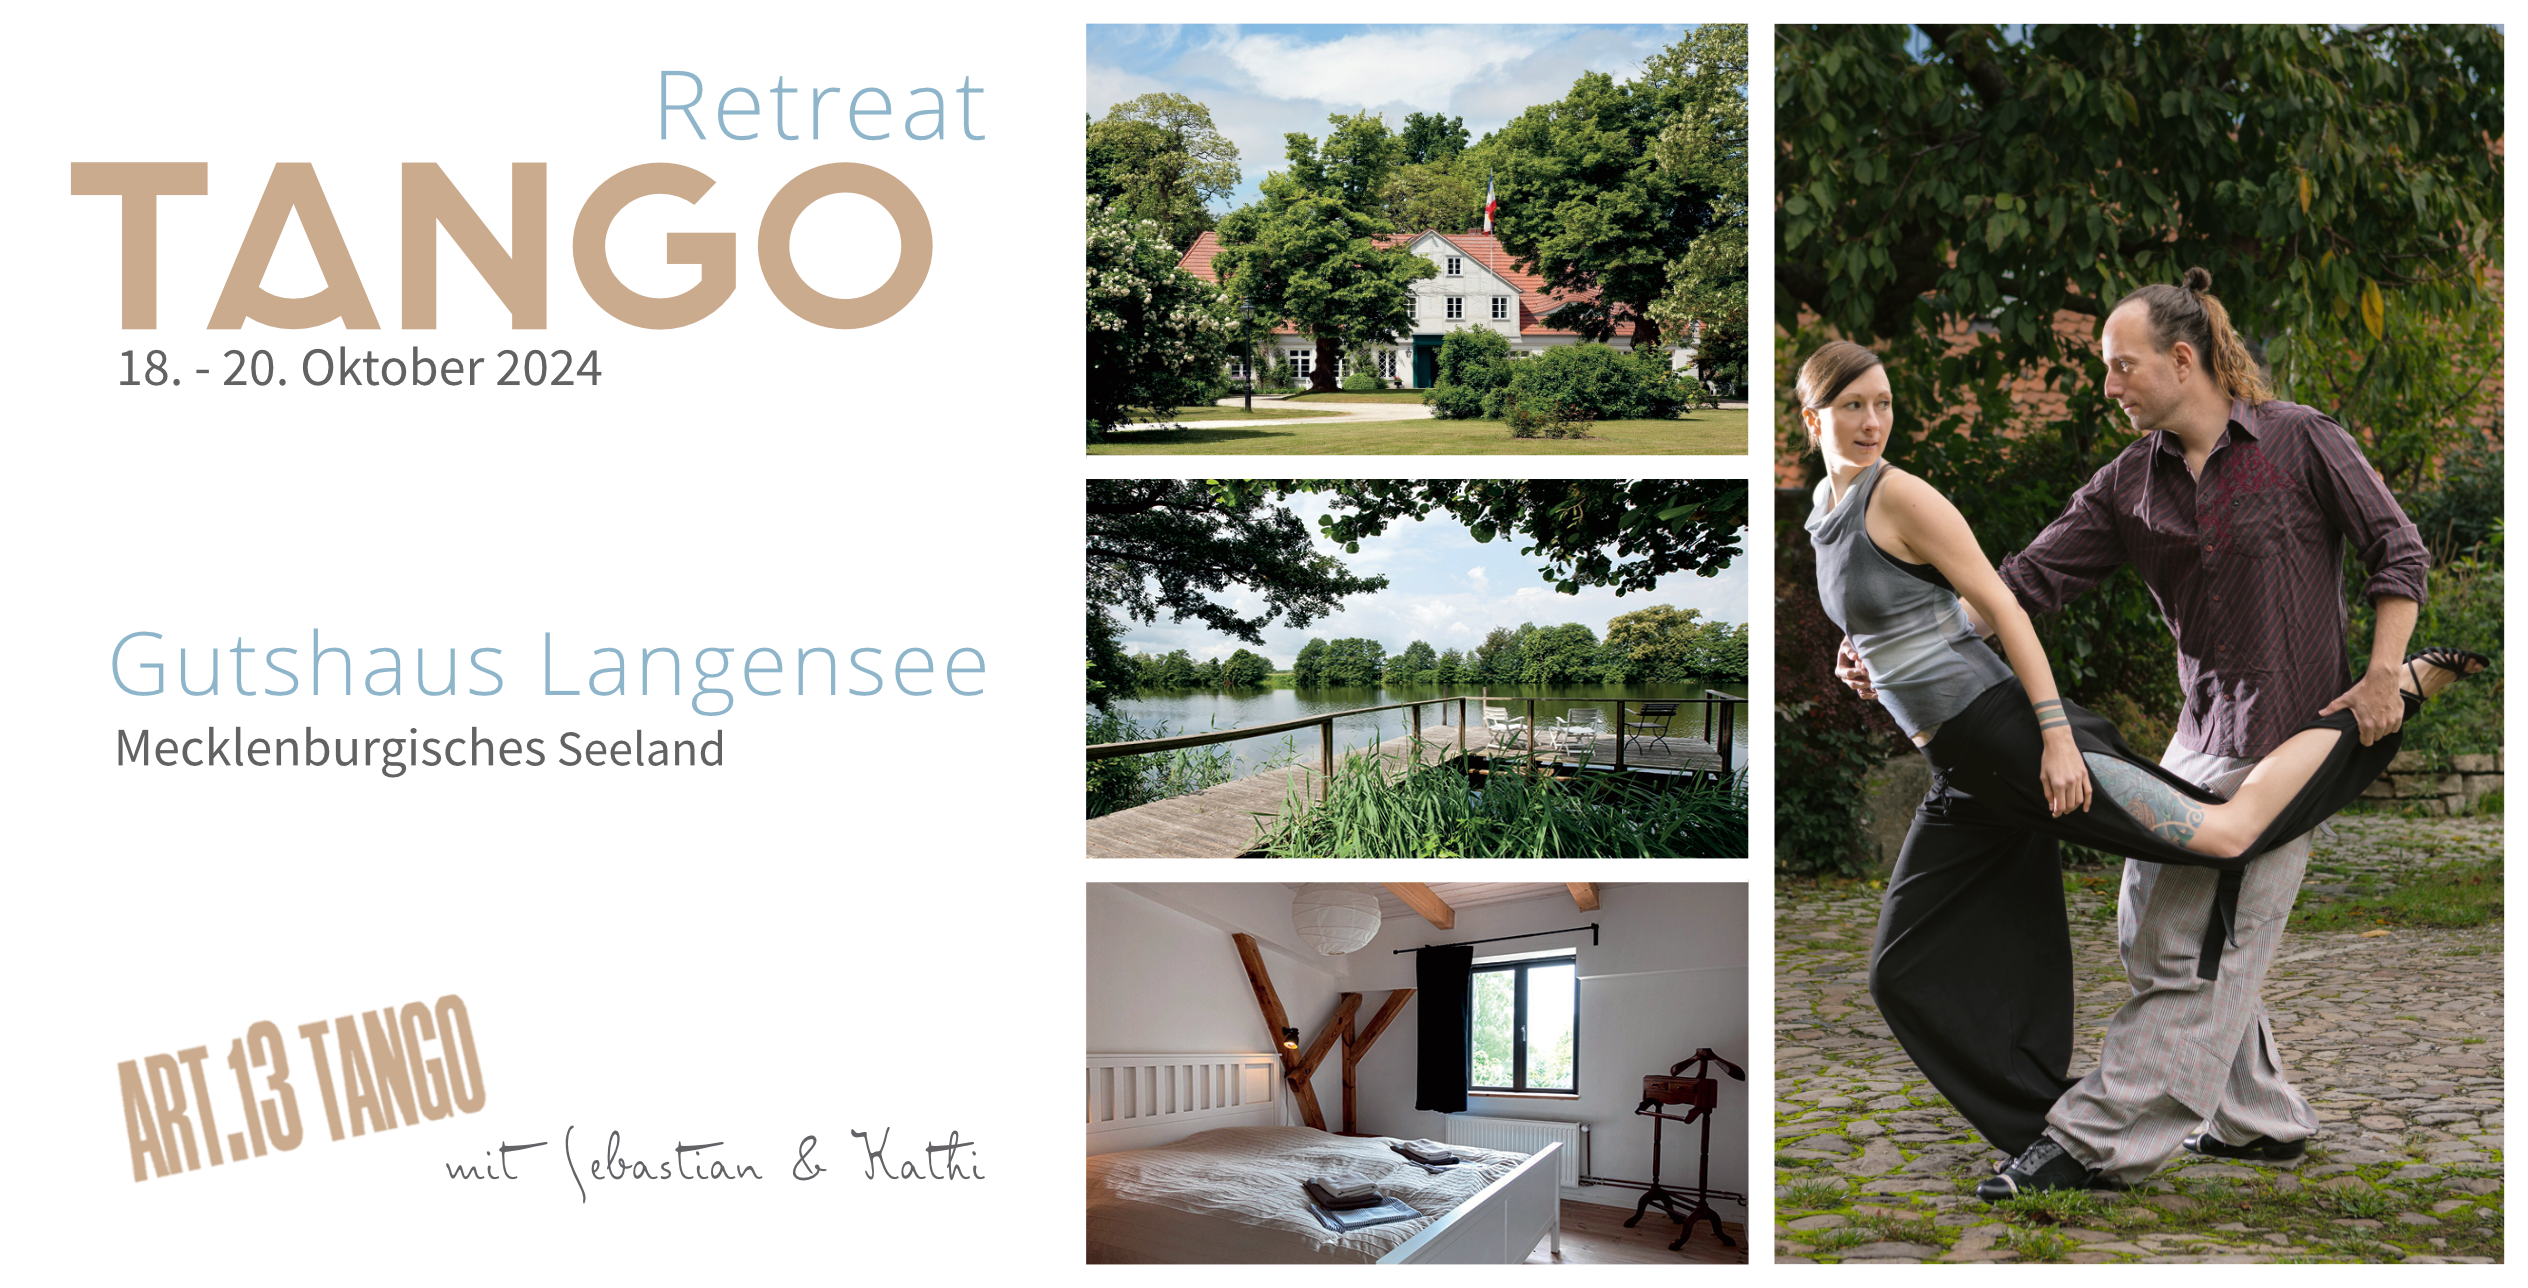 Oktober Tango-Retreat im Gutshaus Langensee | mit Sebastian & Kathi